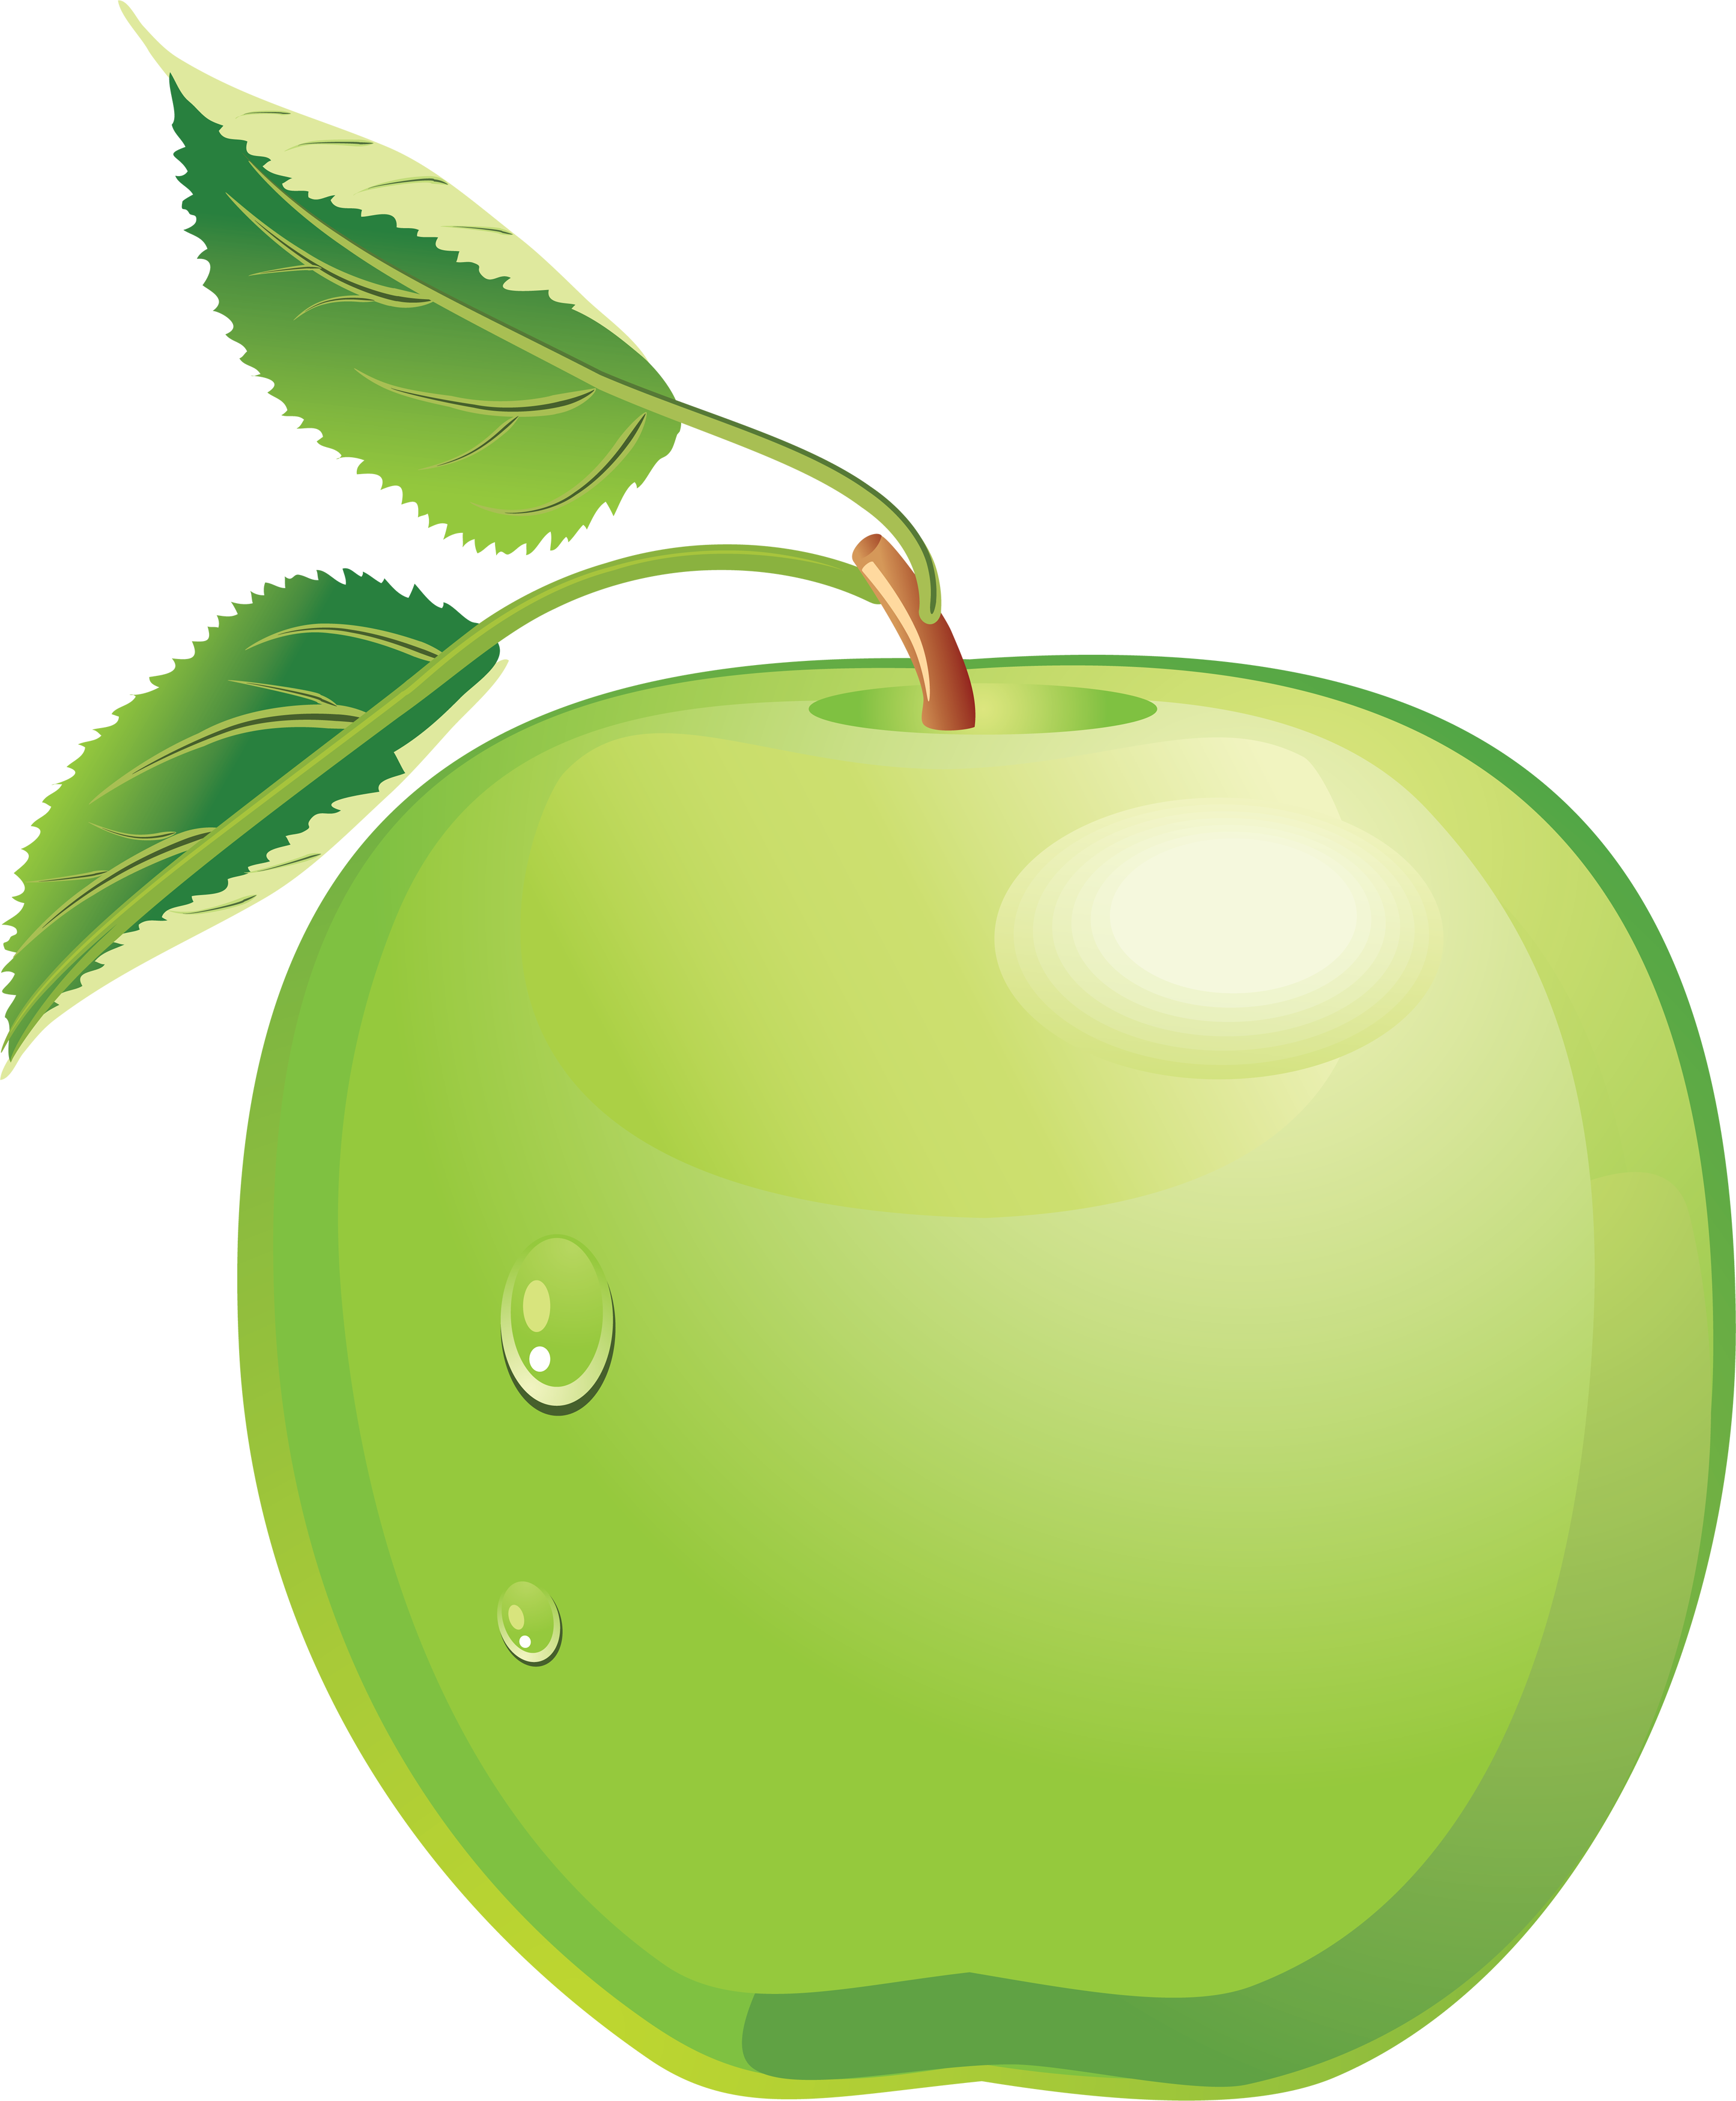 Green Apple Clip Art u2013 Clipart .